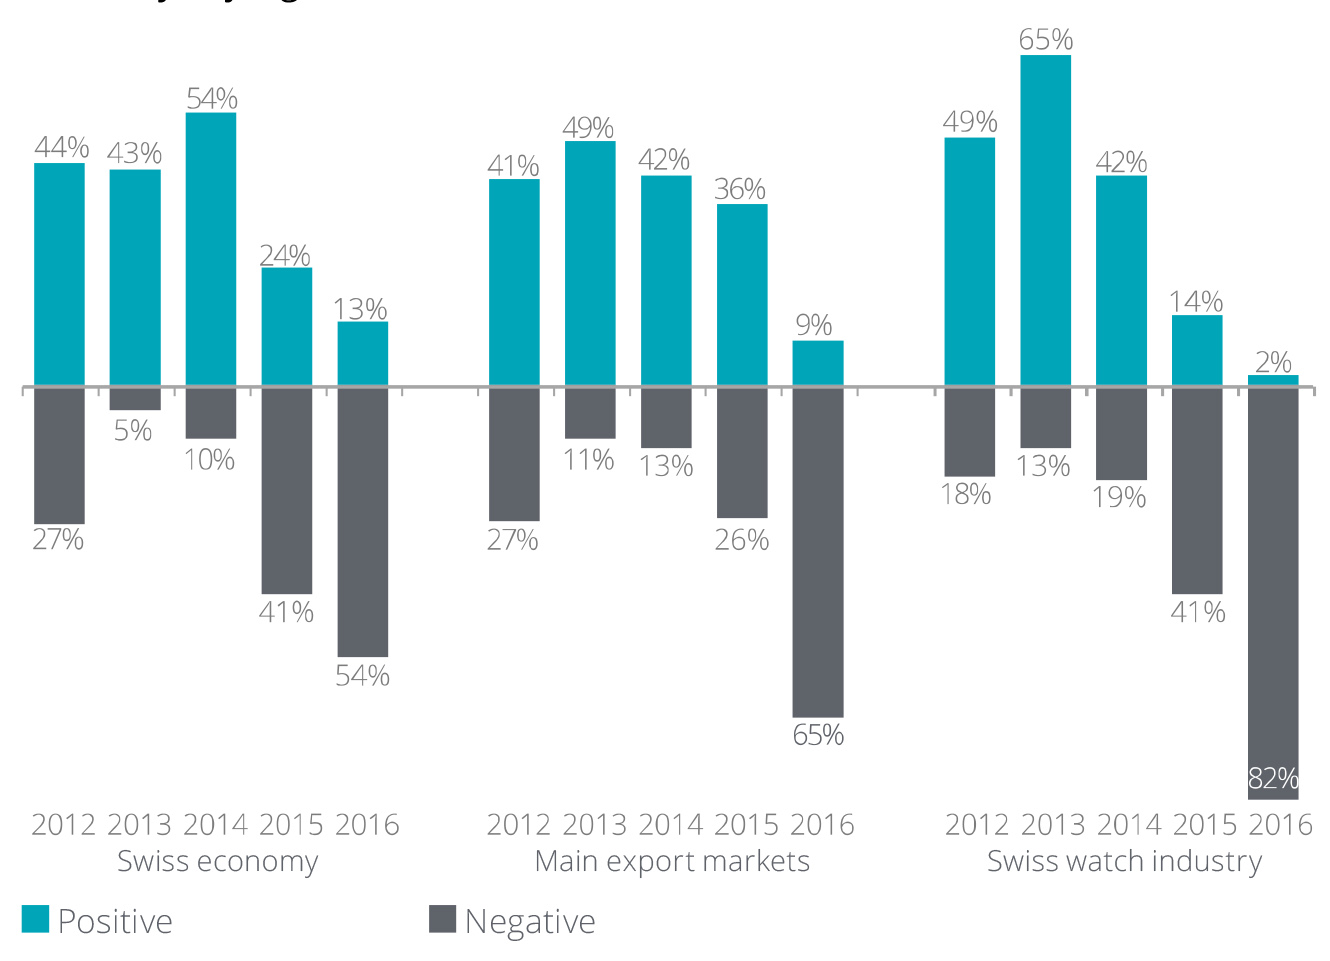 Deloitte swiss watch industry study optimism